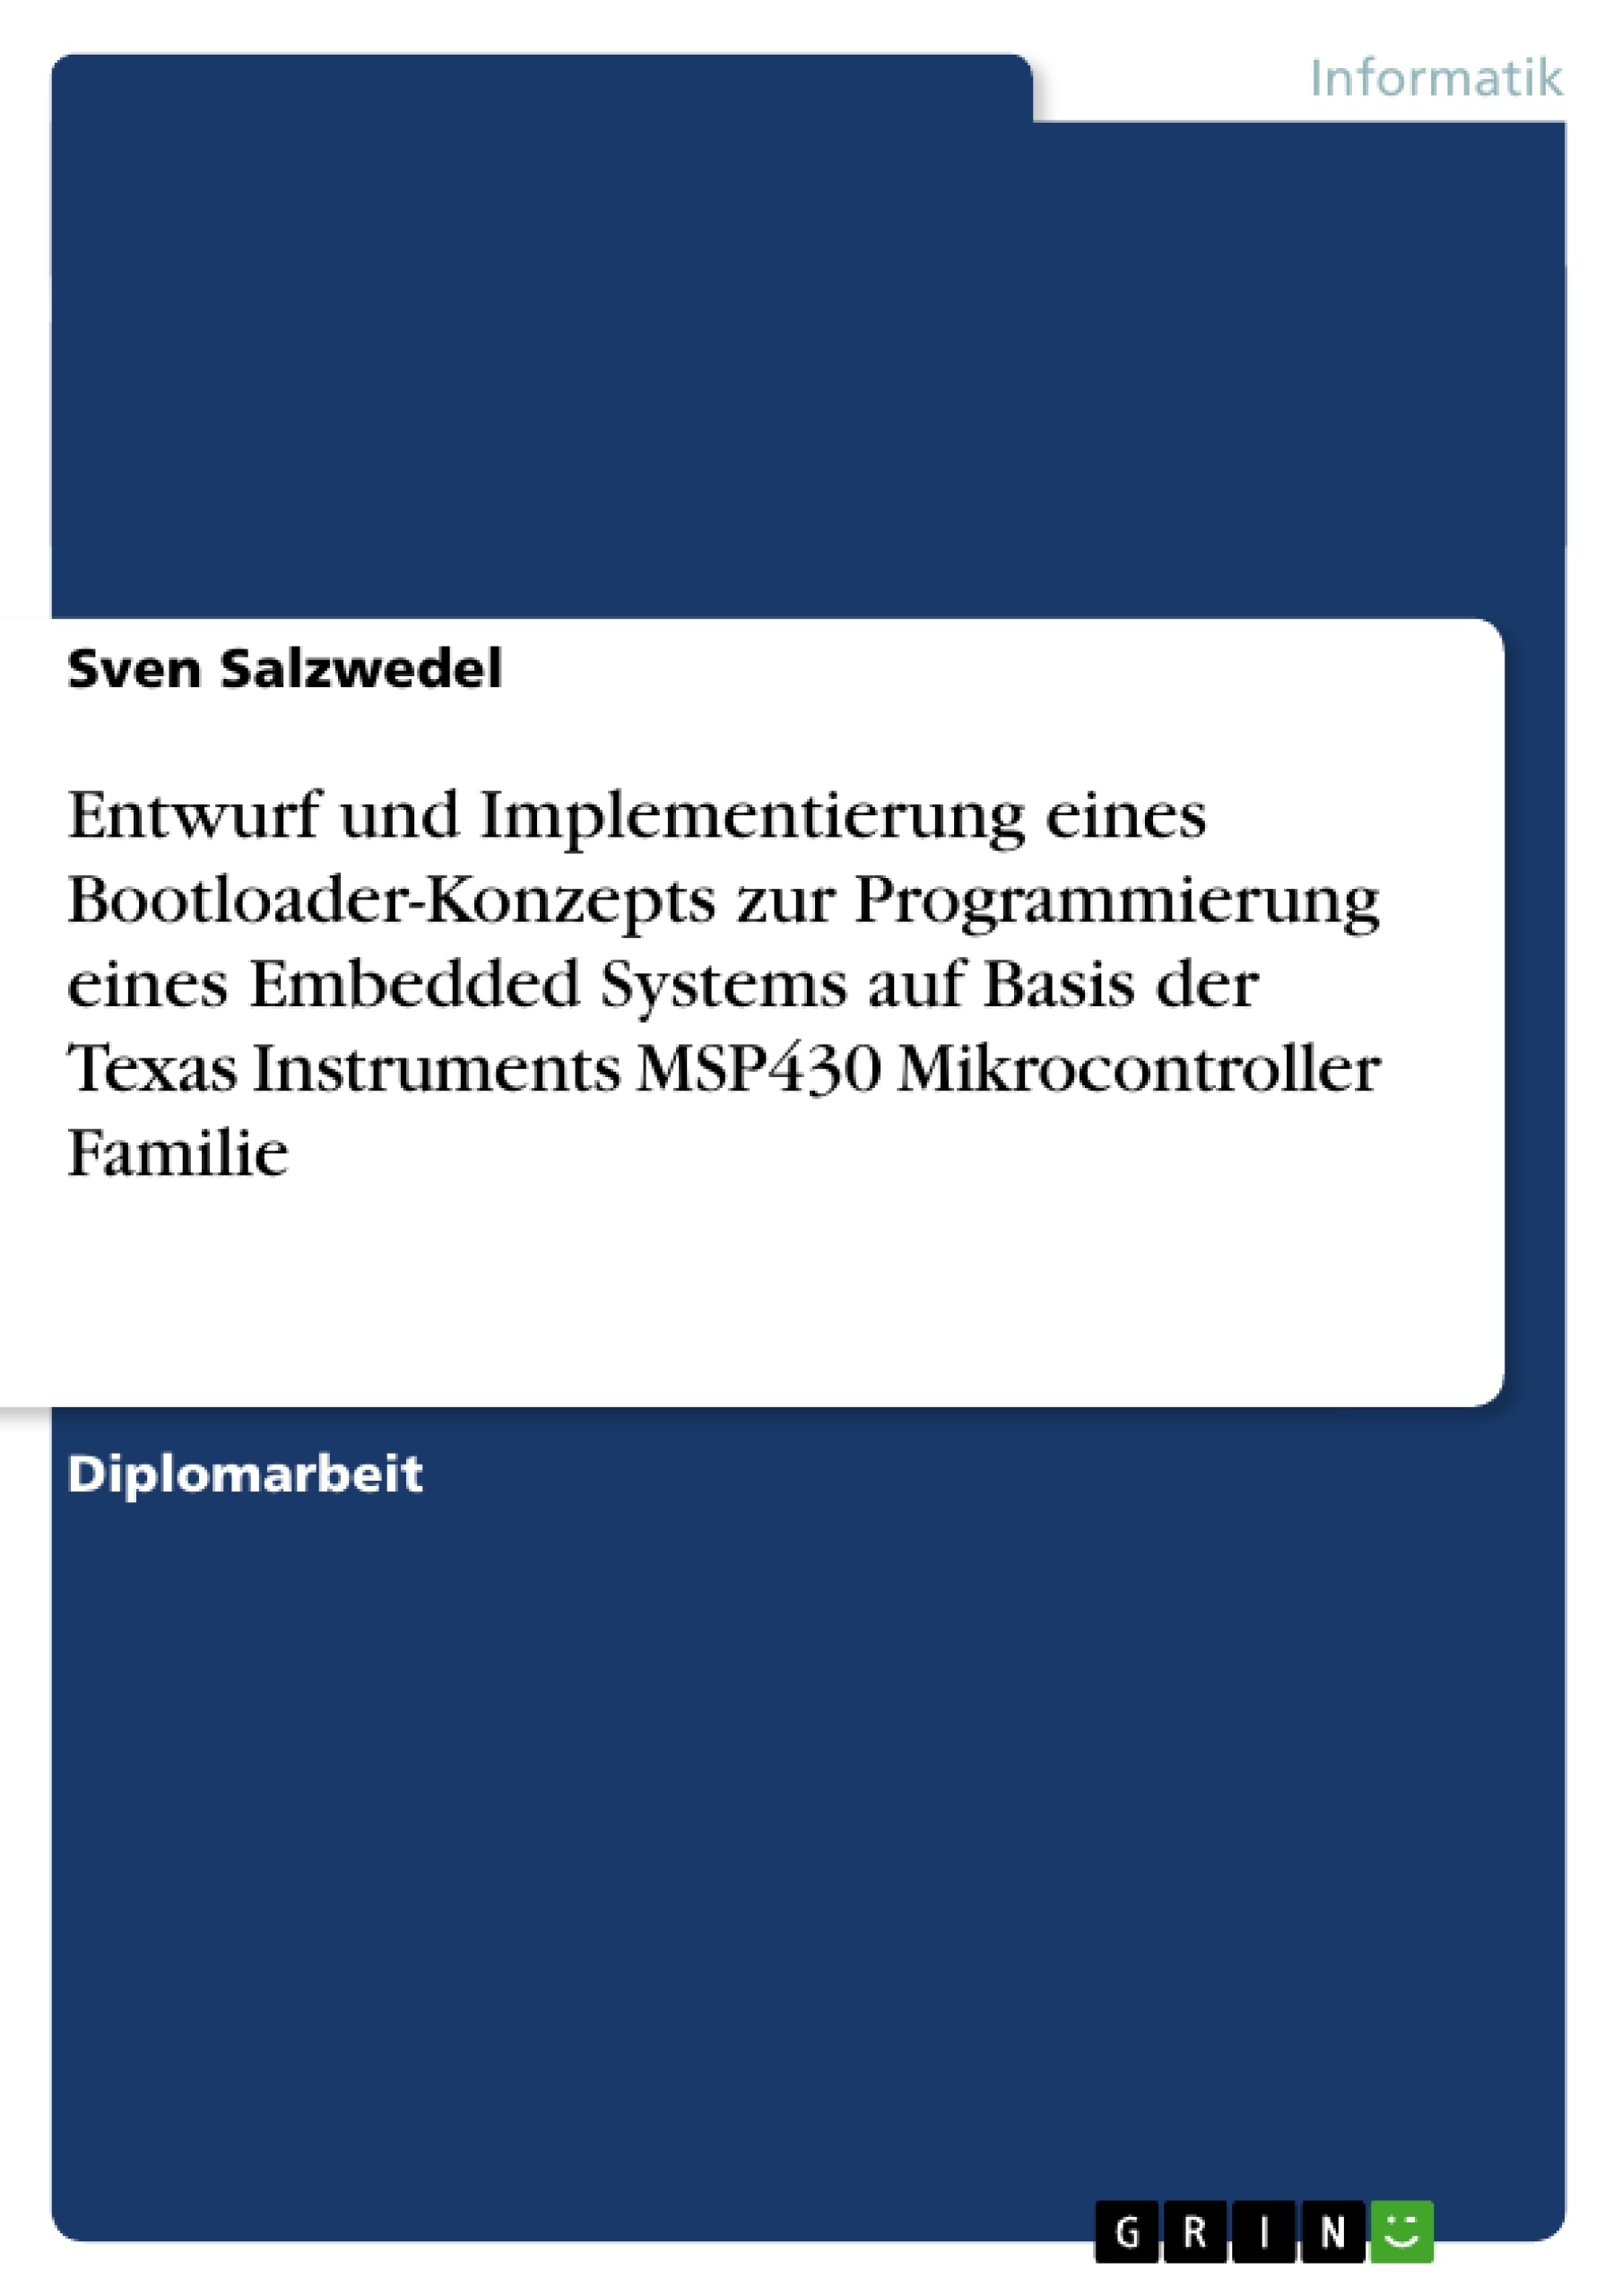 Título: Entwurf und Implementierung eines Bootloader-Konzepts zur Programmierung eines Embedded Systems auf Basis der Texas Instruments MSP430 Mikrocontroller Familie